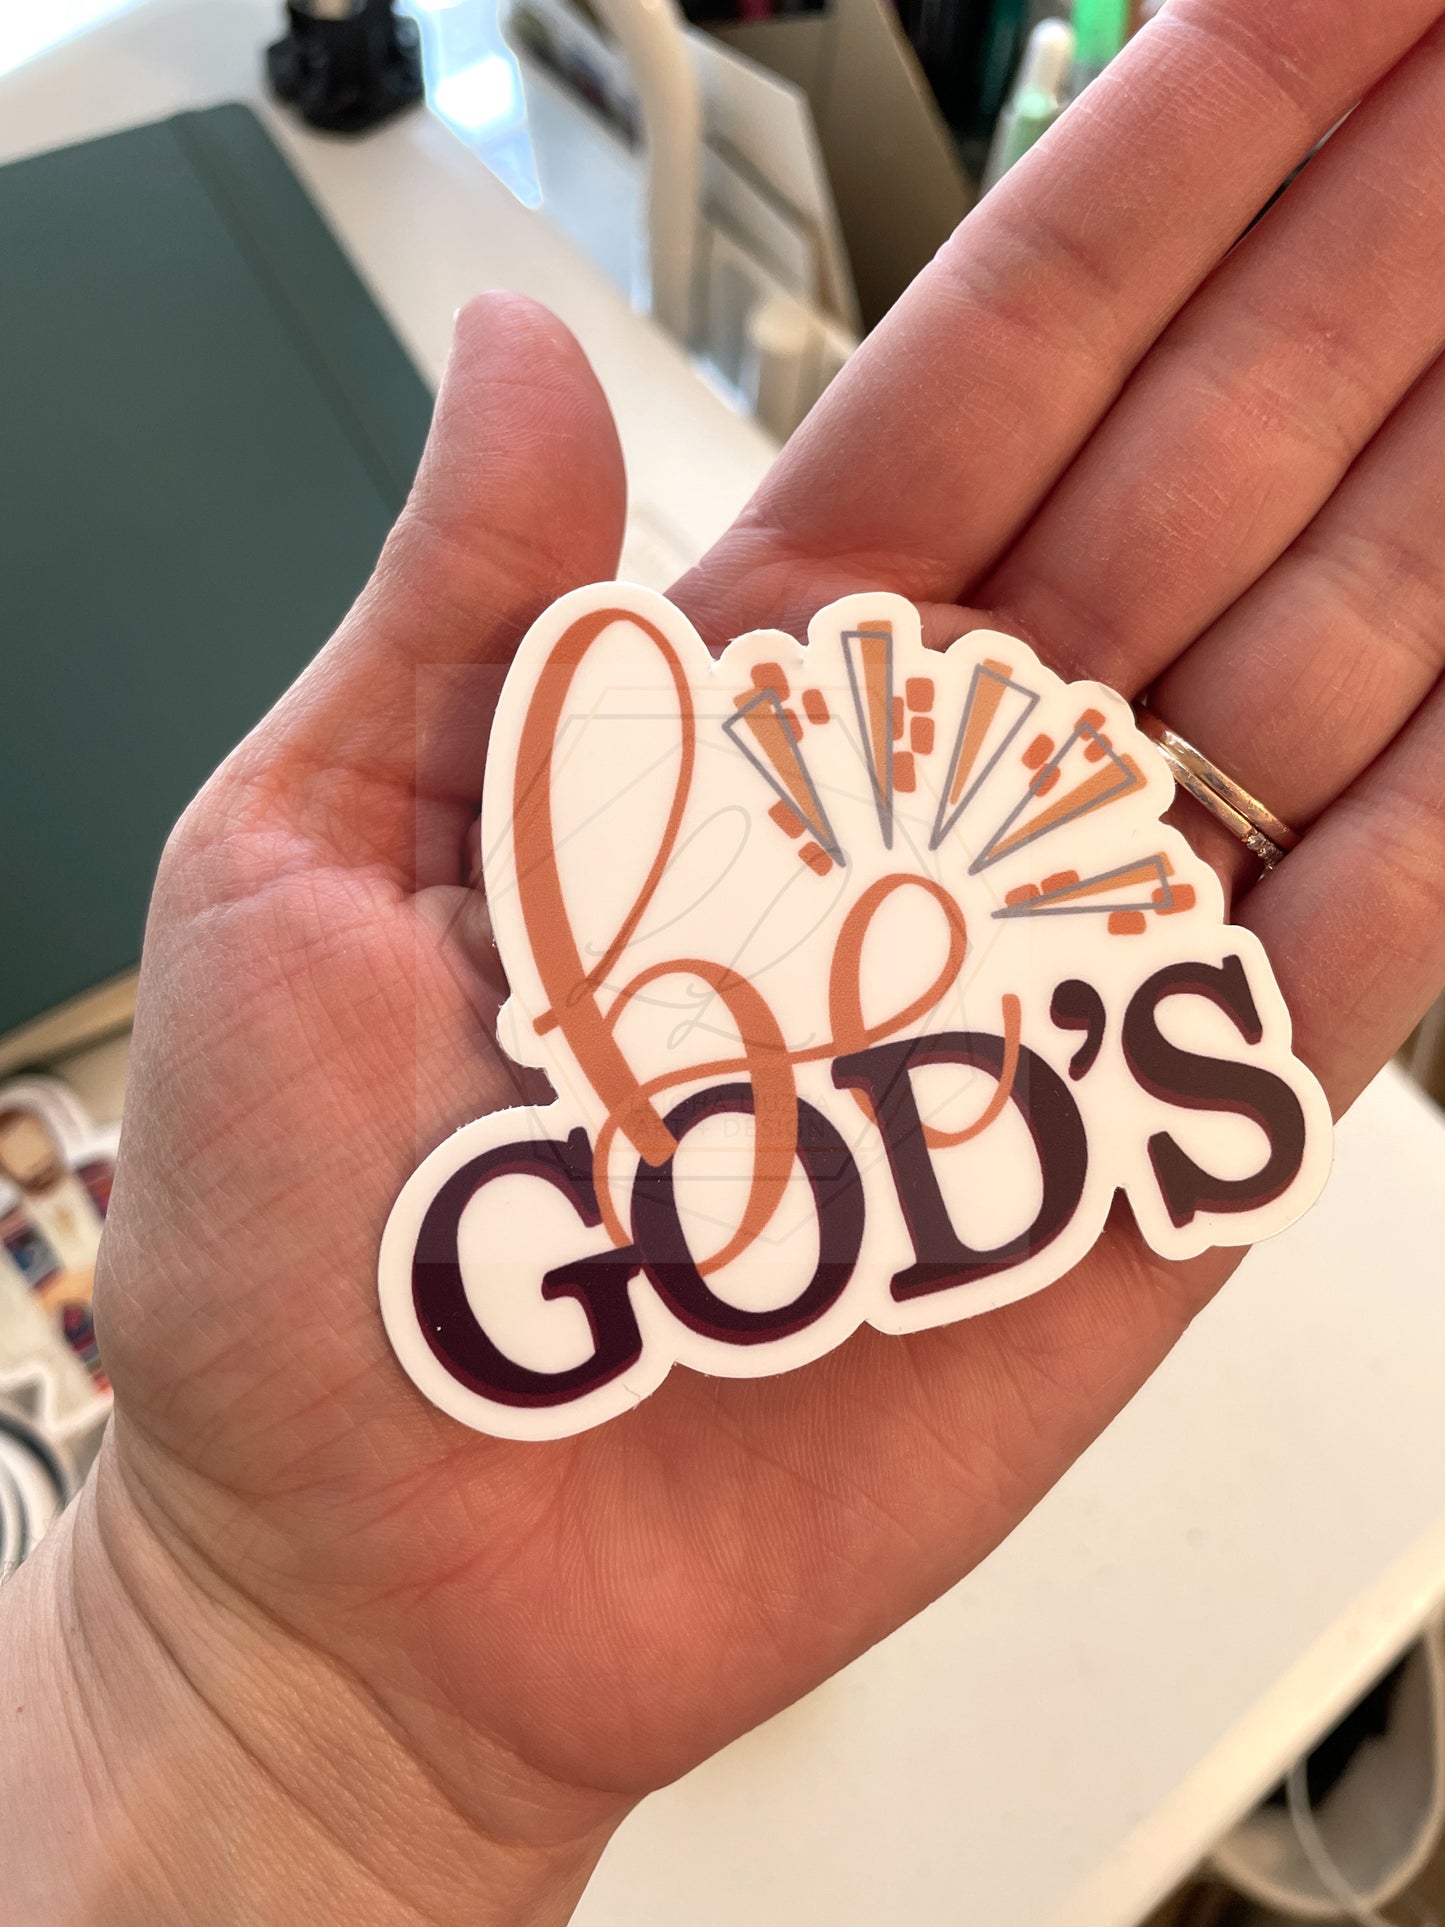 Be God's  |  Sticker